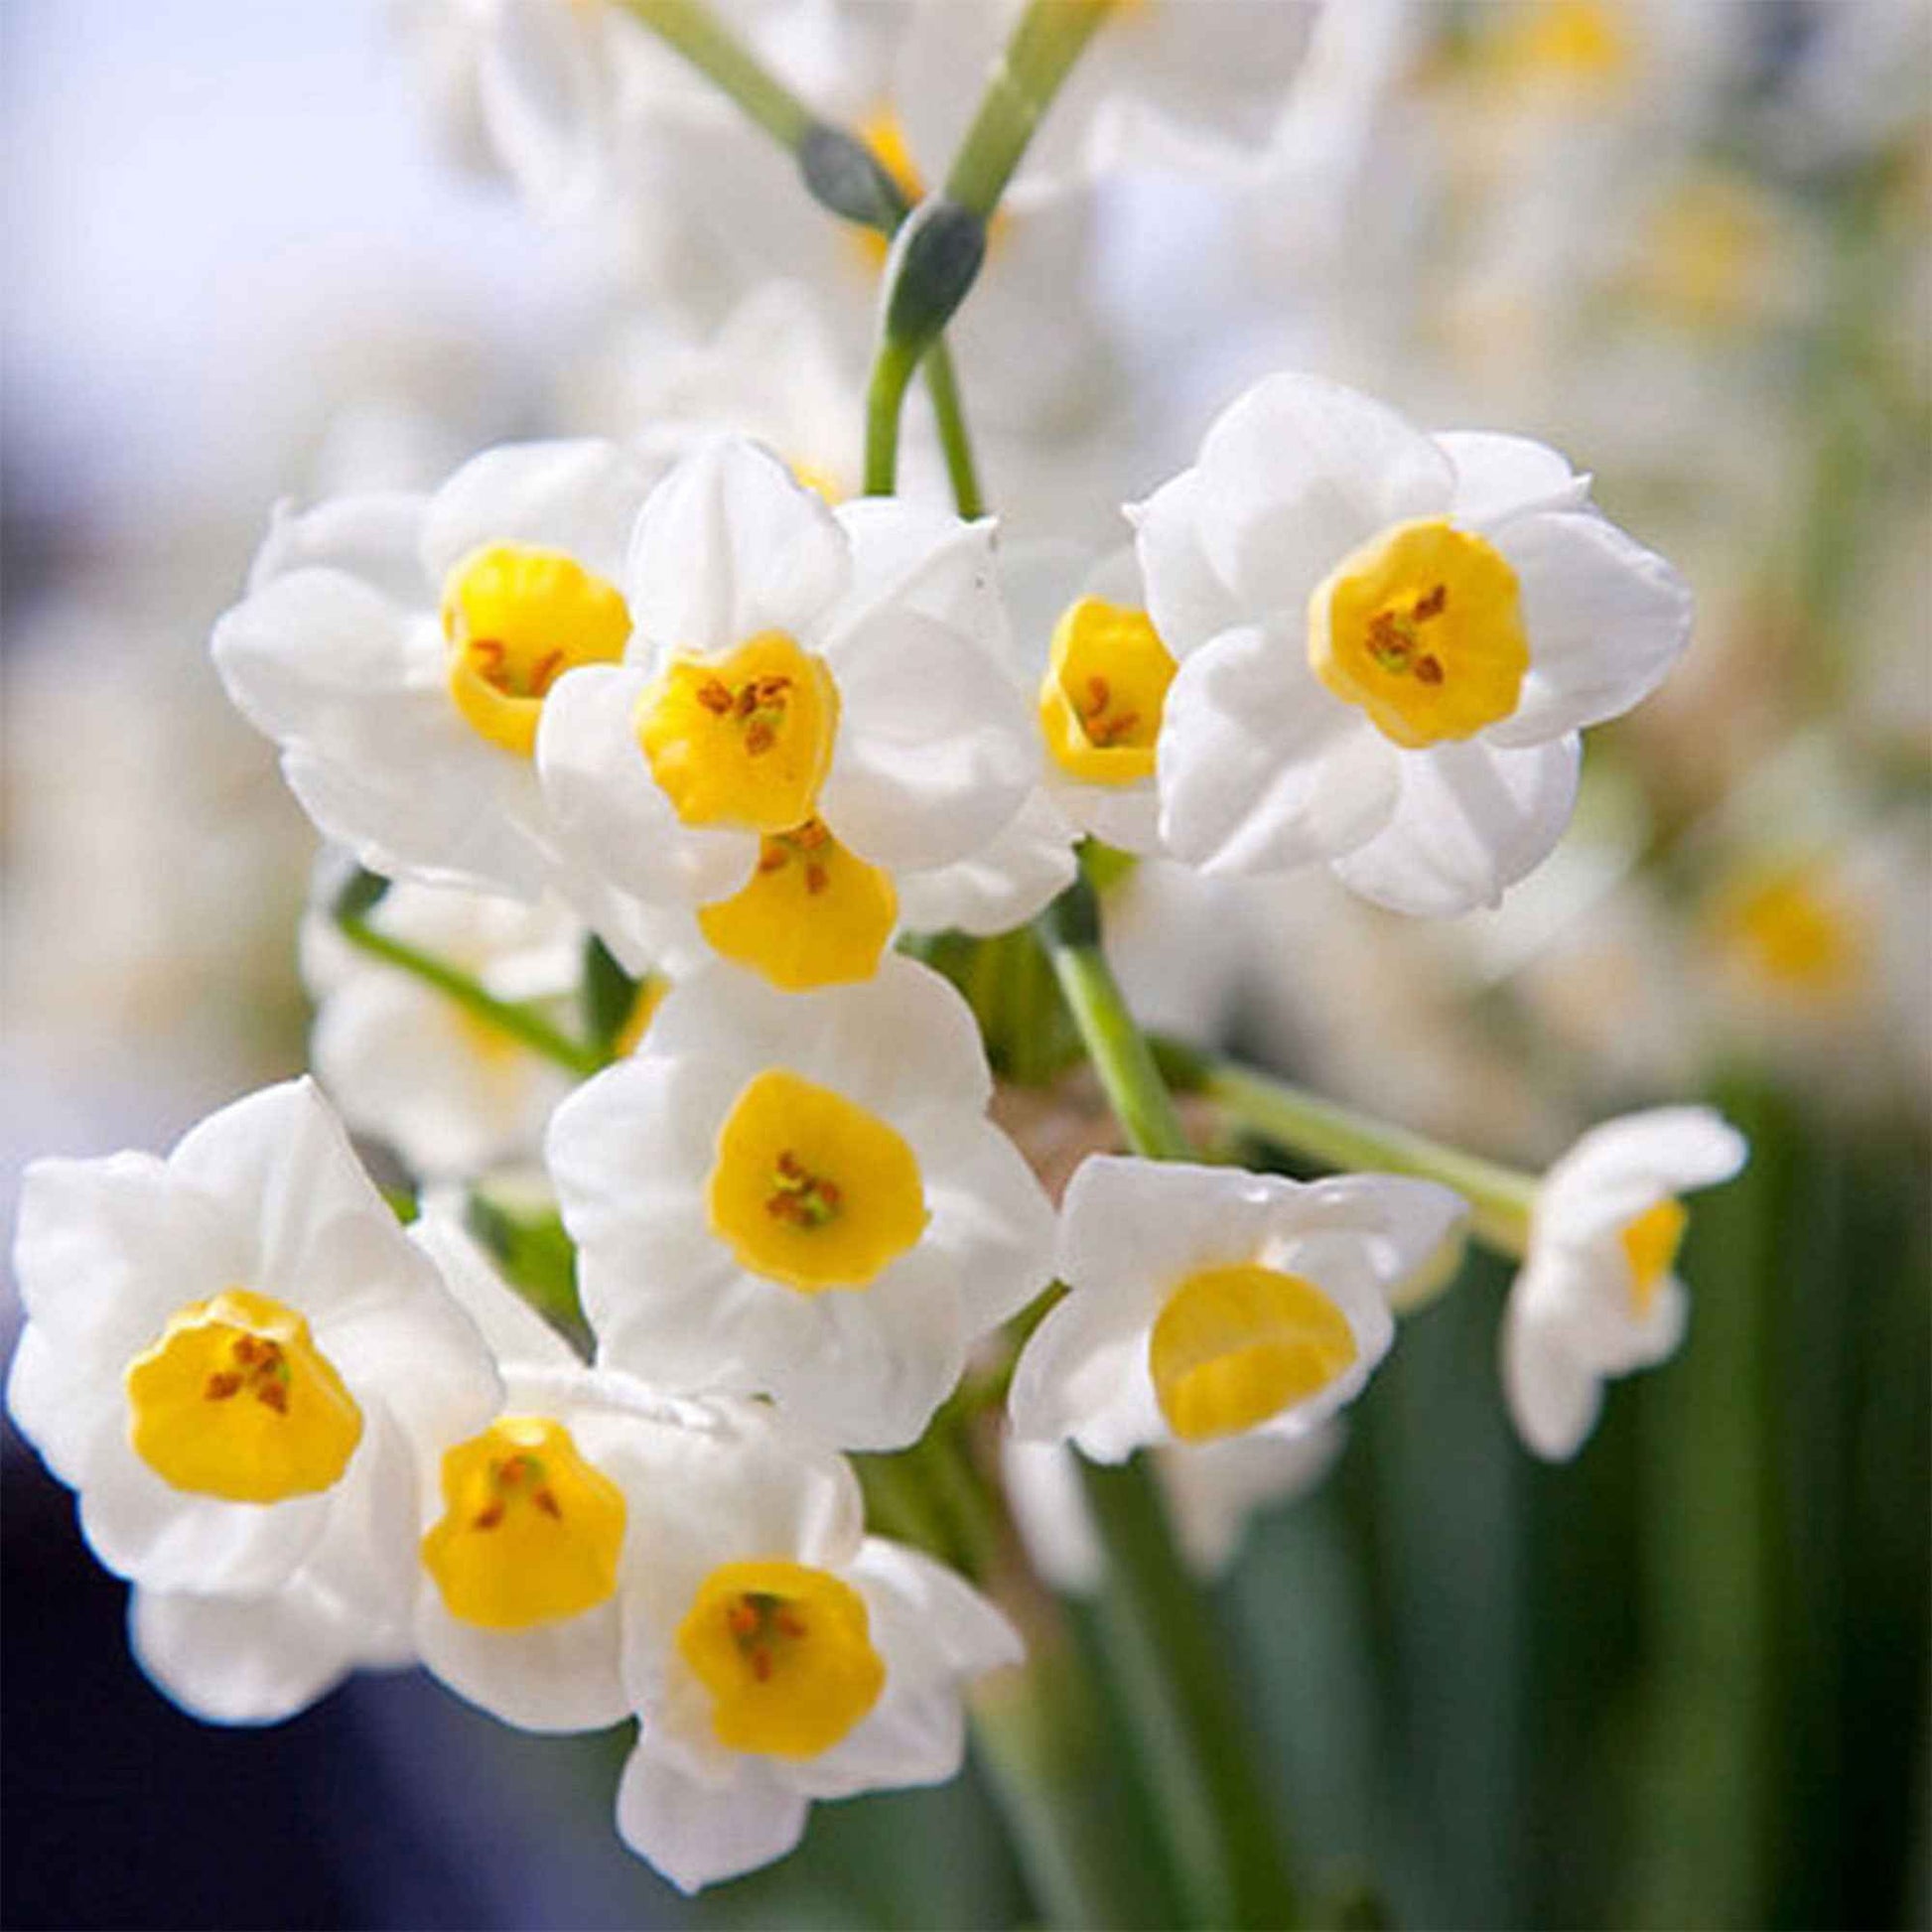 5x Narcisse 'Avalanche' blanc-jaune - Bulbes de fleurs populaires